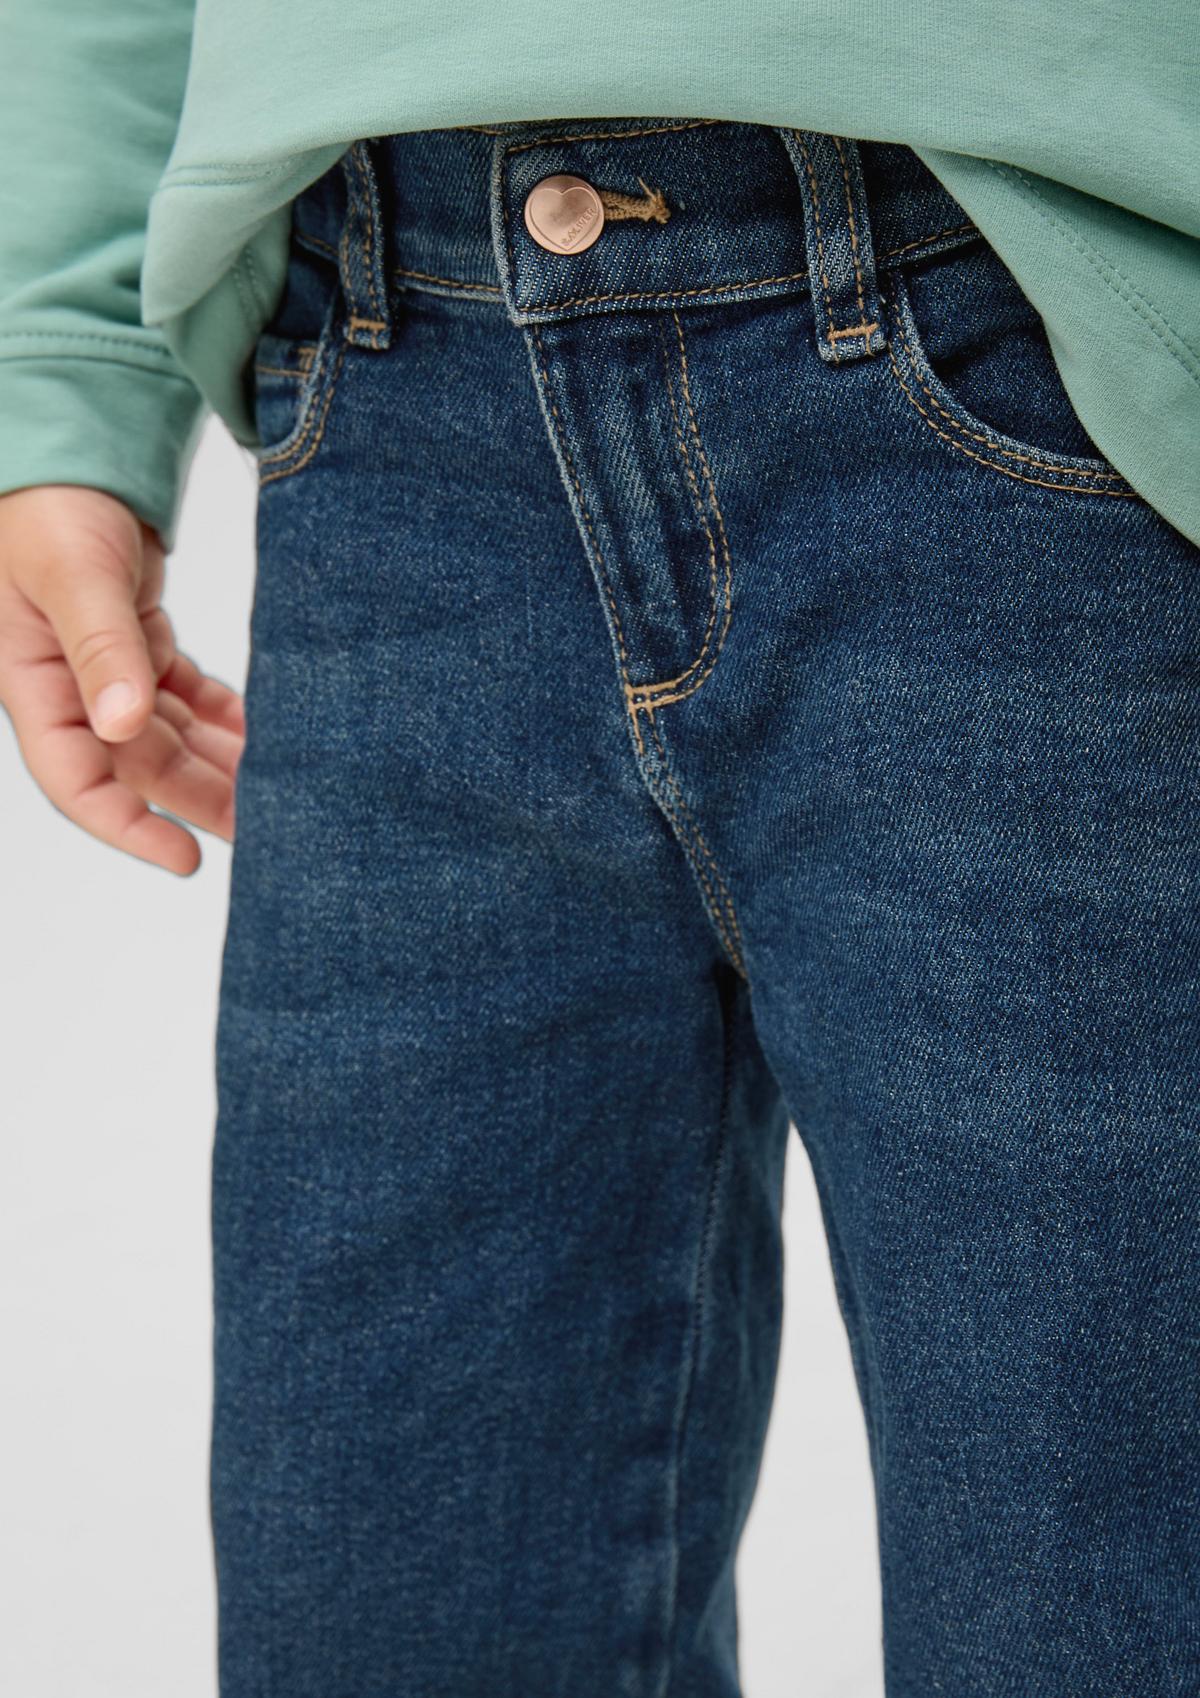 s.Oliver Jeans / regular fit / mid rise / wide leg / width-adjustable